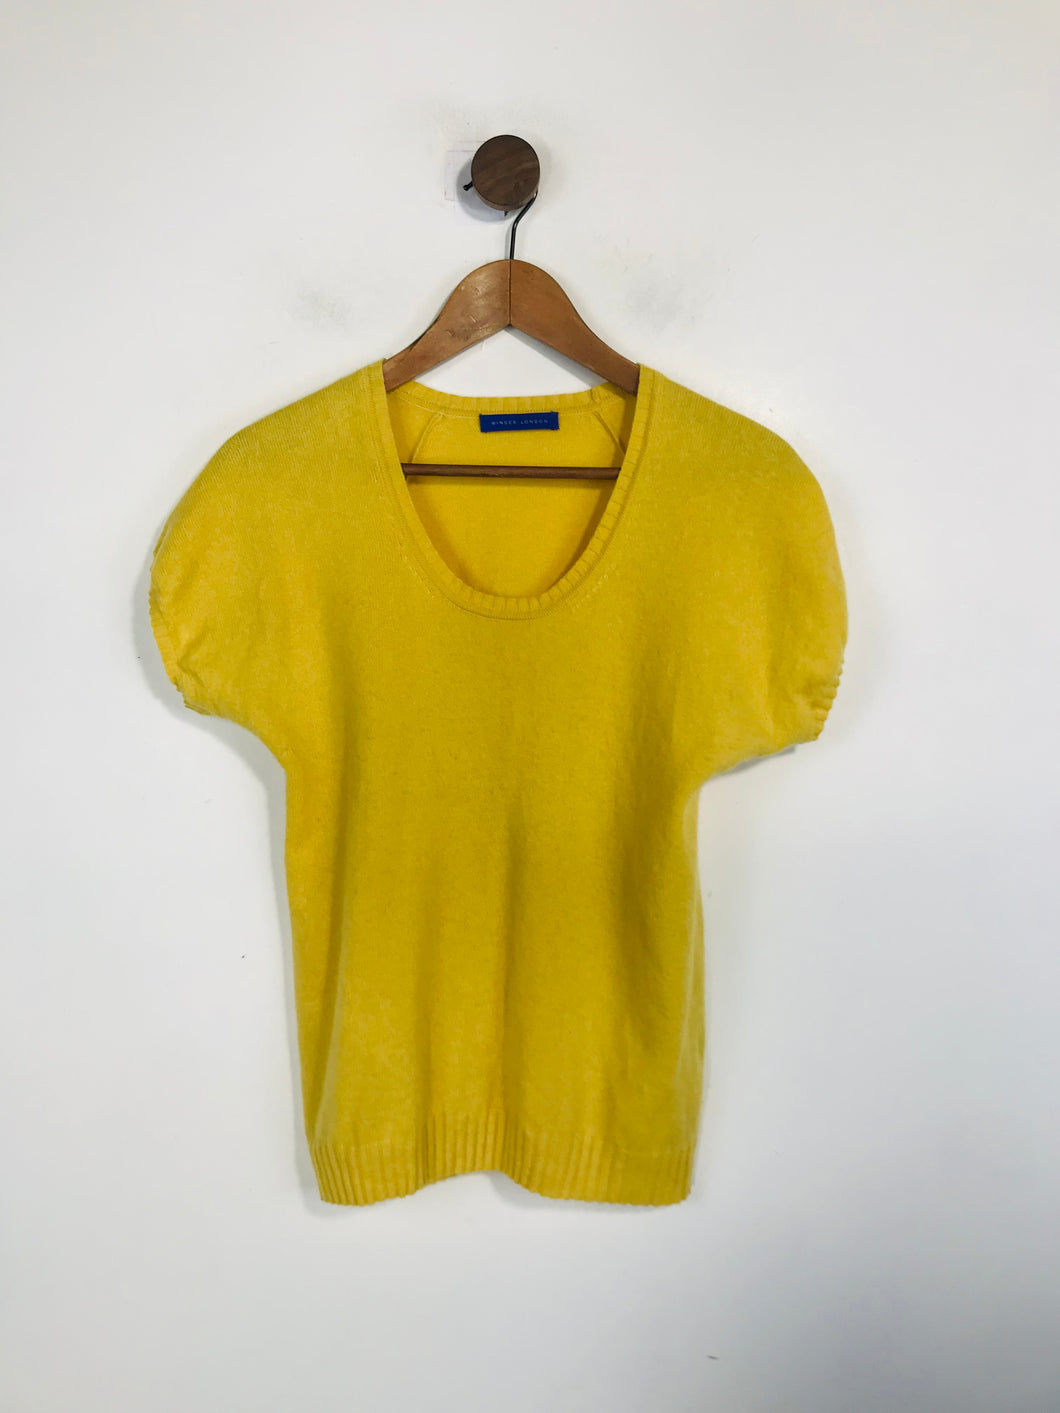 Winser London Women's Cashmere Knit T-Shirt | M UK10-12 | Yellow